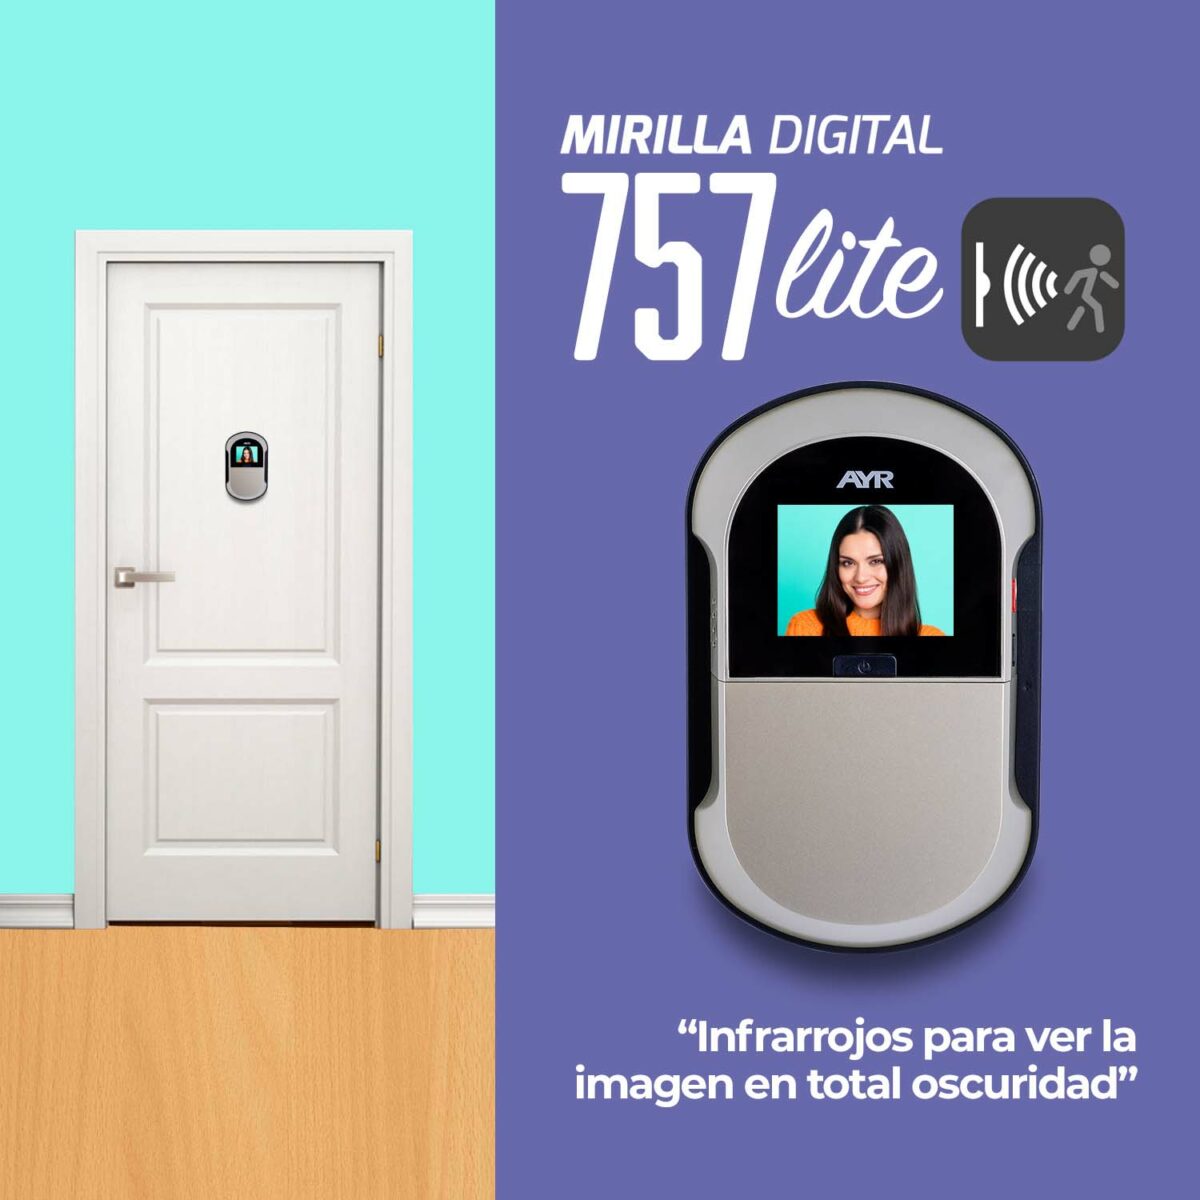 ayr_mirilla_digital_757_puerta